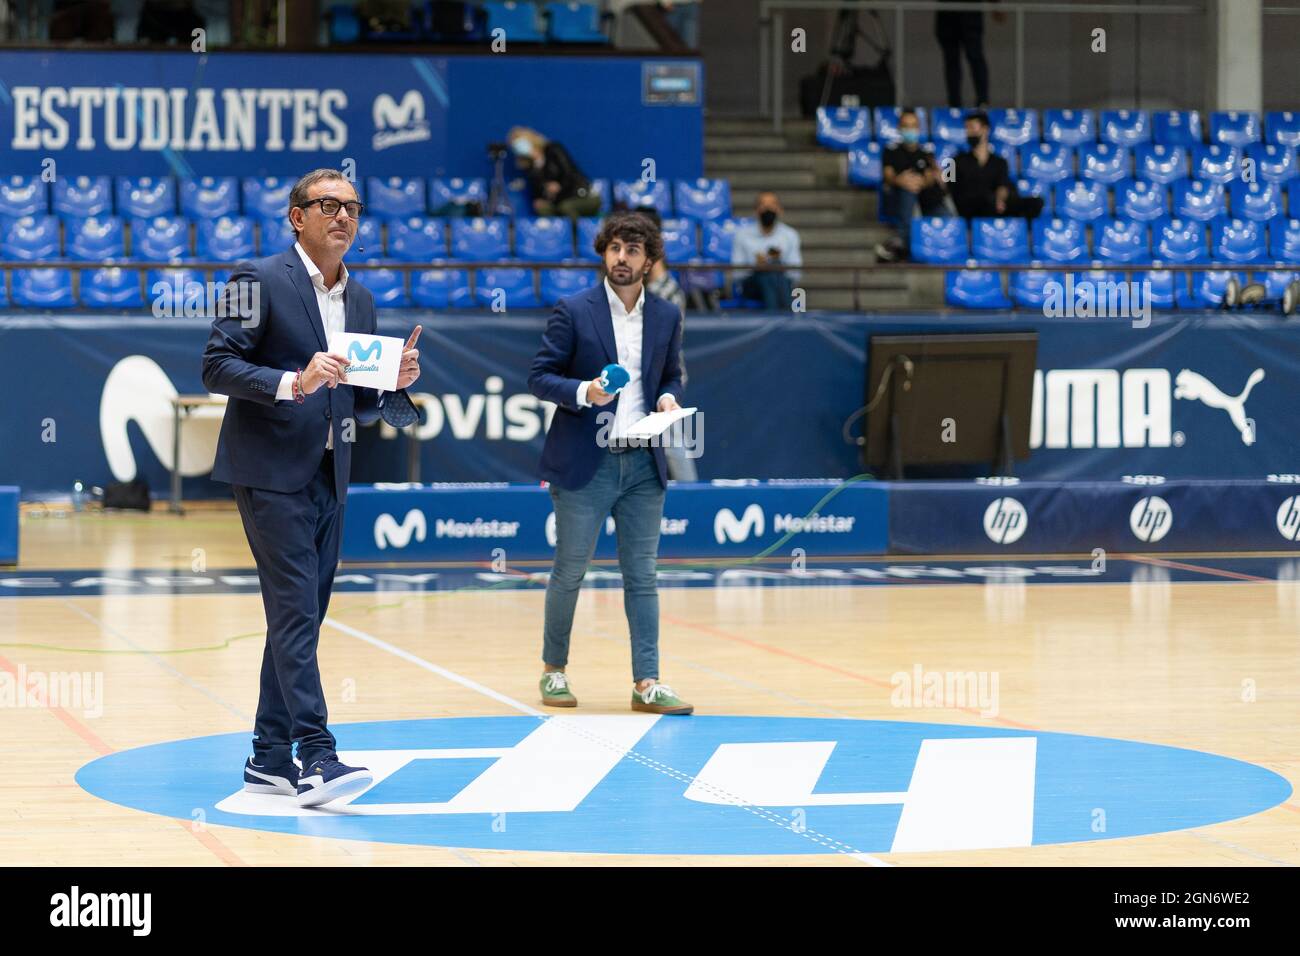 MADRID, SPAIN - 22 SEPTEMBER 2021: Iyi Mart’n (left), speaker of Movistar Estudiantes.  Credit: Oscar Ribas Torres/Medialys Images/Alamy Live News Stock Photo